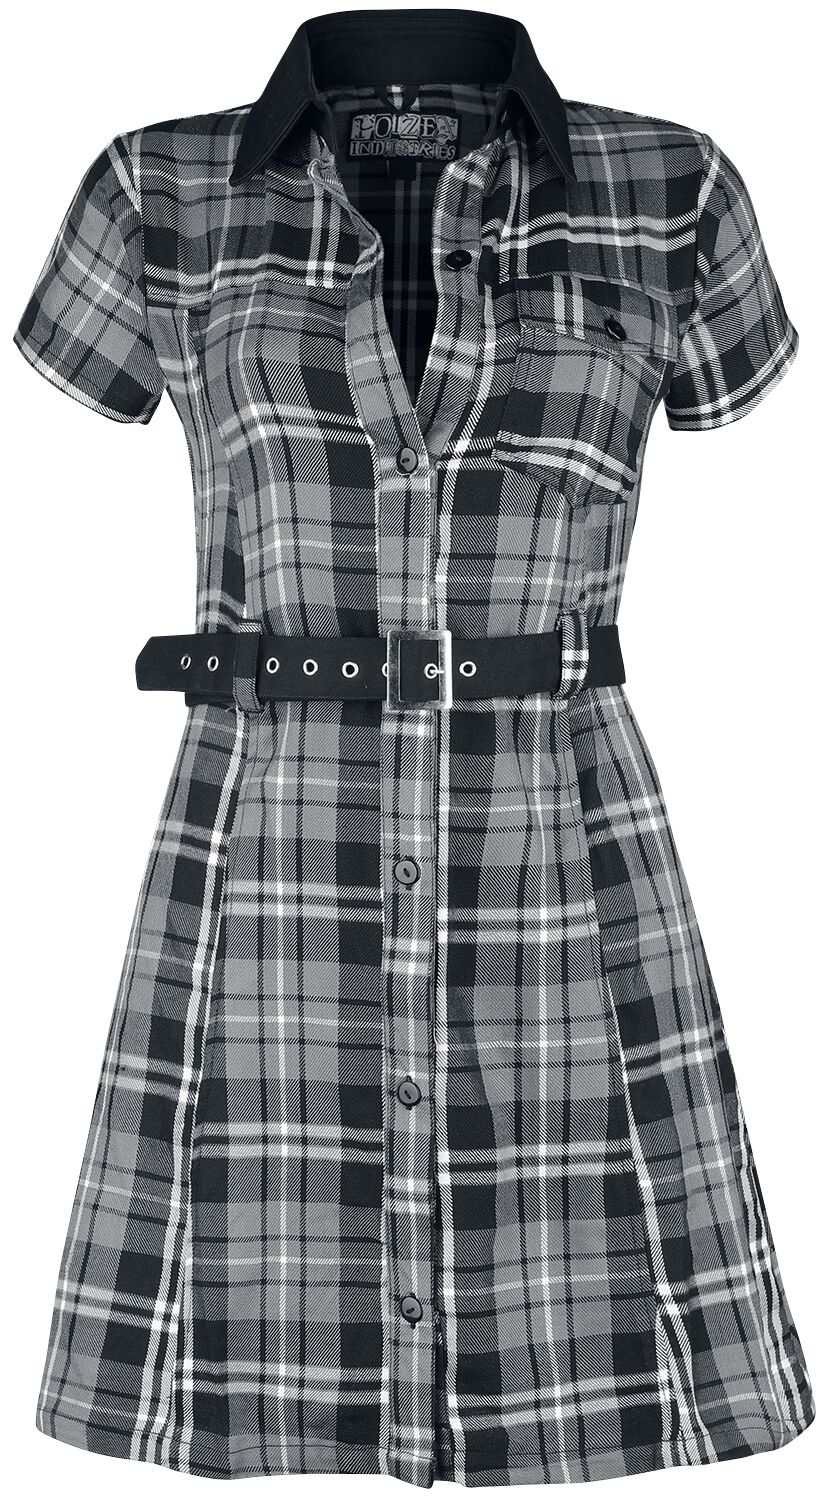 Poizen Industries Kurzes Kleid - Adelaide Dress - XS bis L - für Damen - Größe S - schwarz/grau/weiß von Poizen Industries